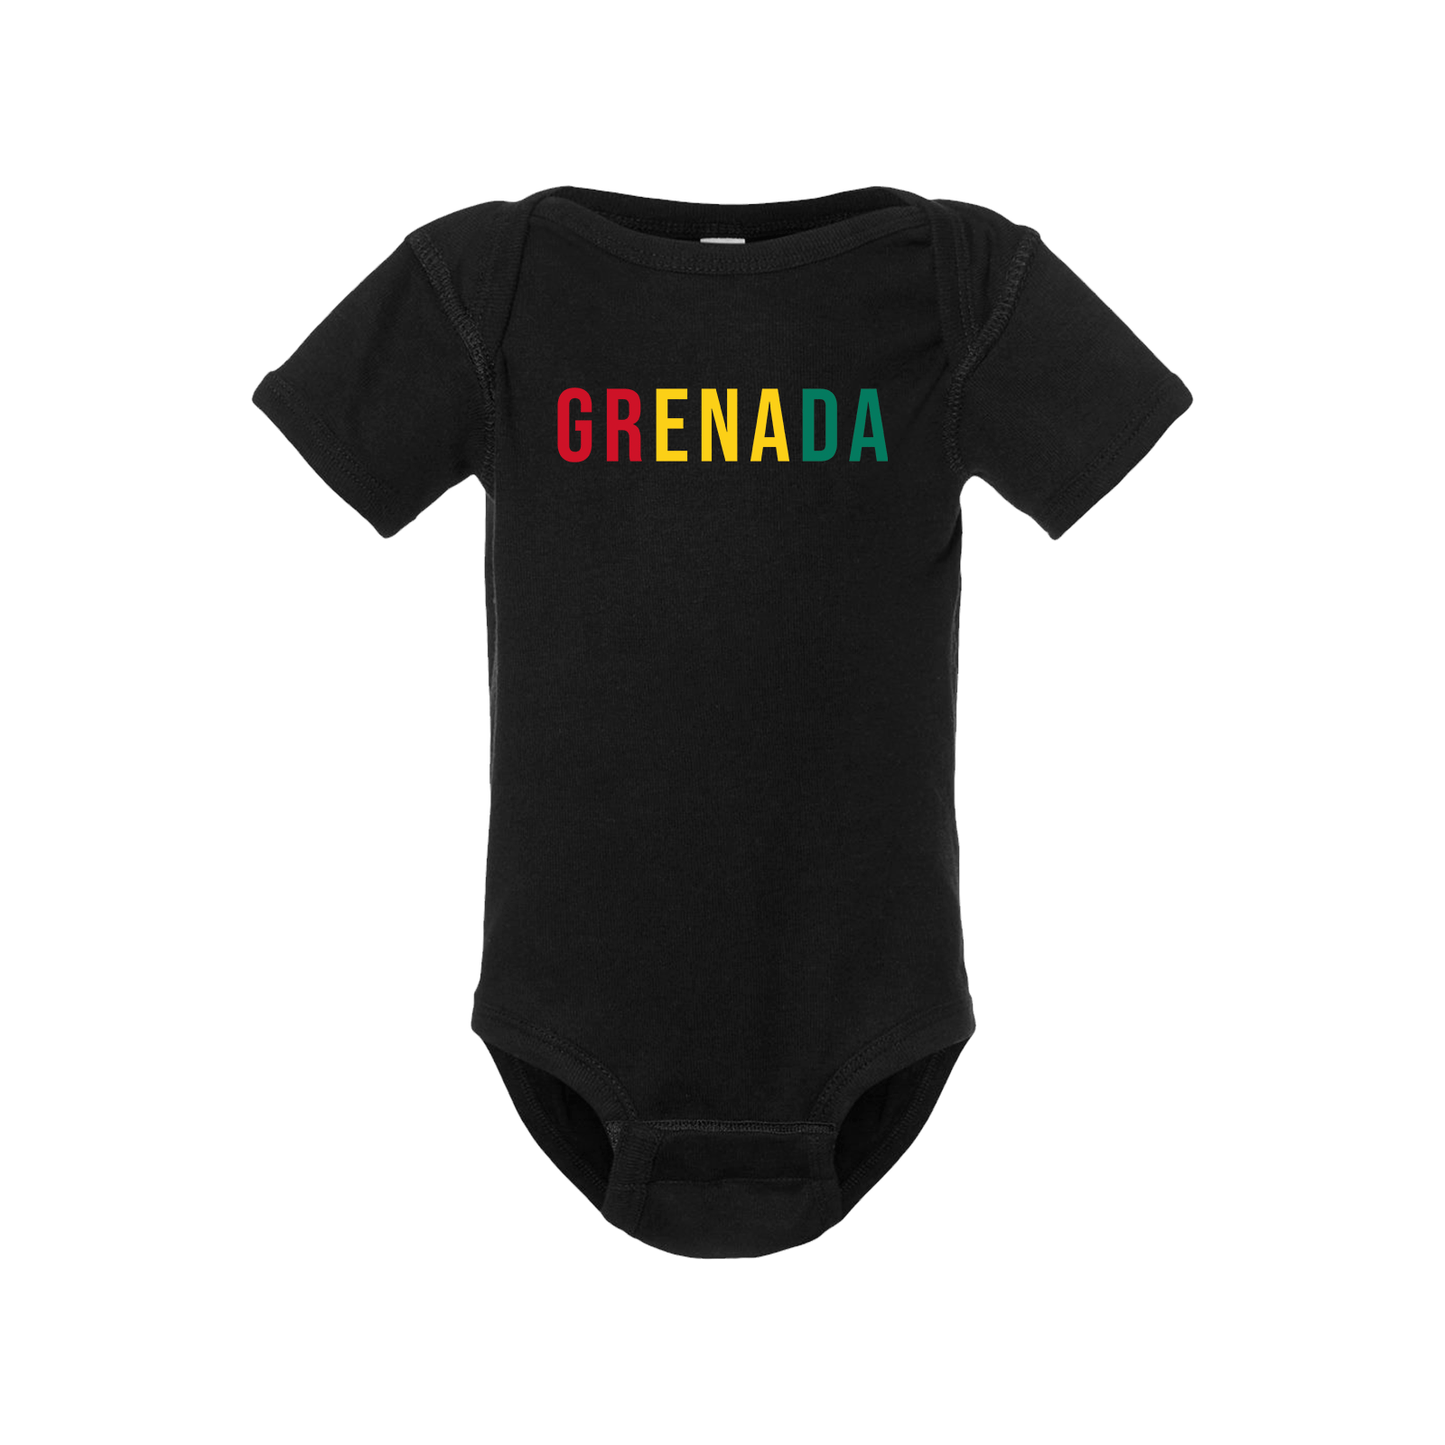 Grenada Short Sleeve Onesie - Babies & Toddlers